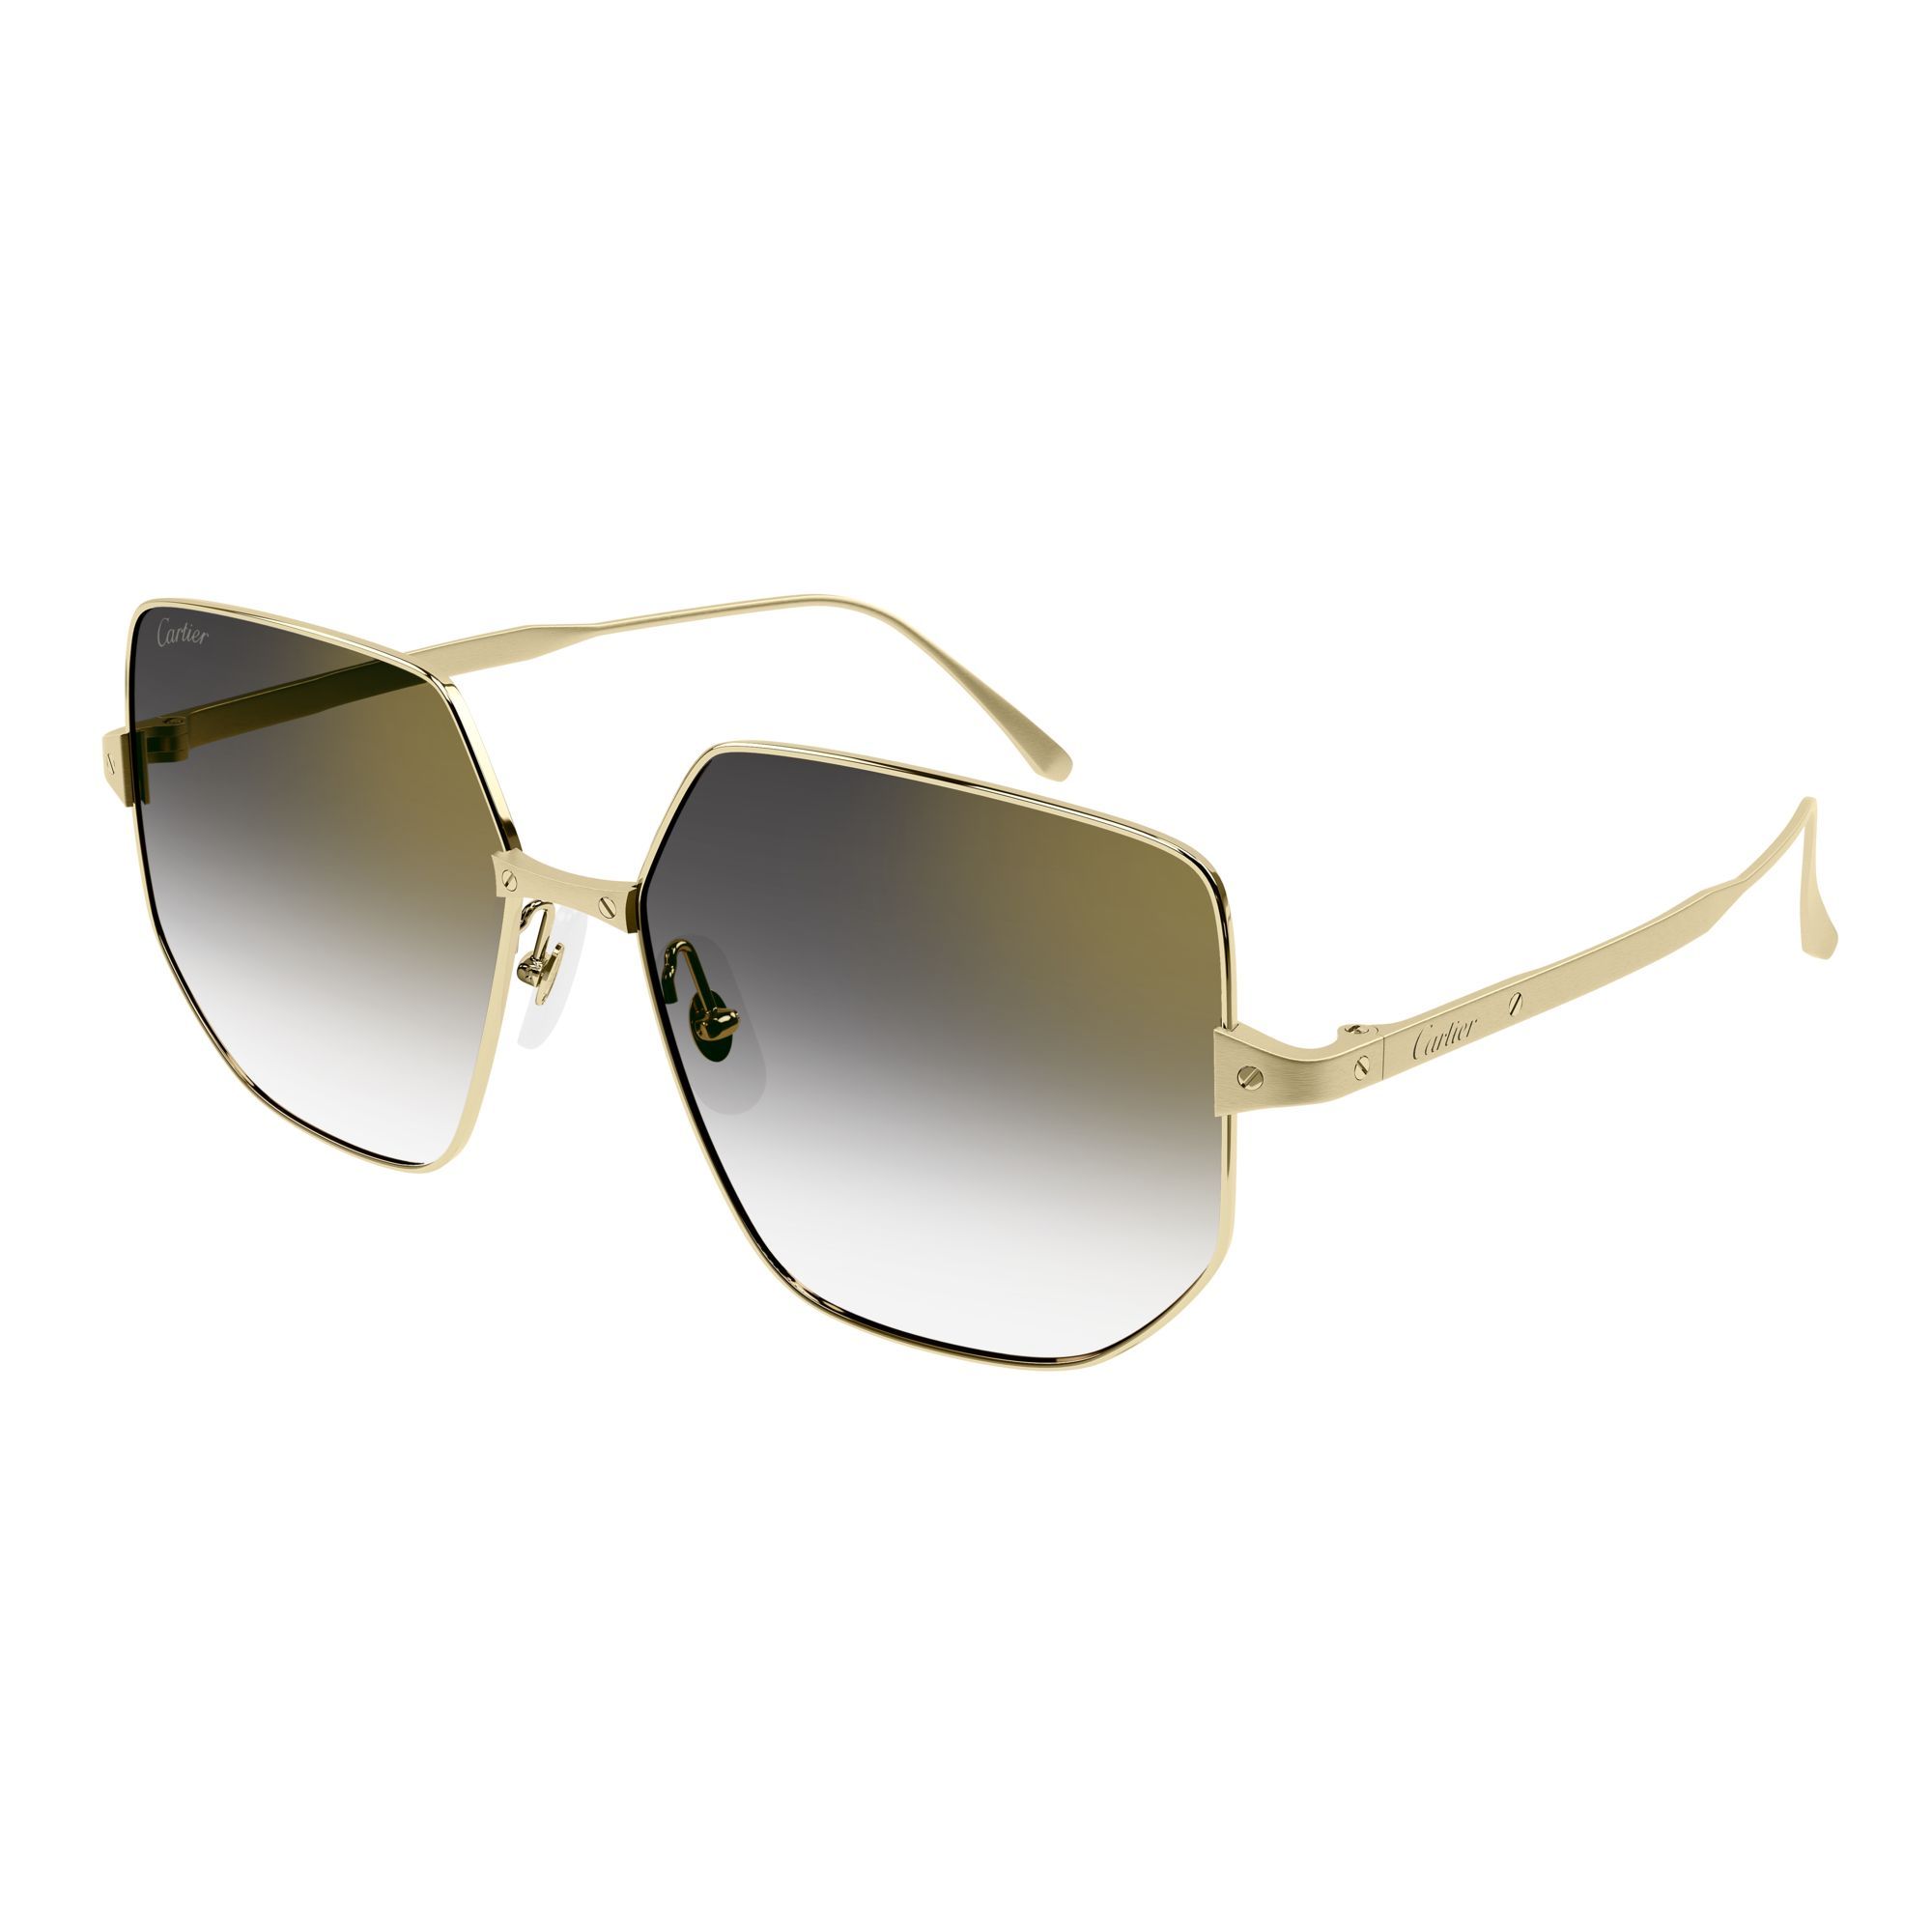 CT0327S Square Sunglasses 1 - size 58